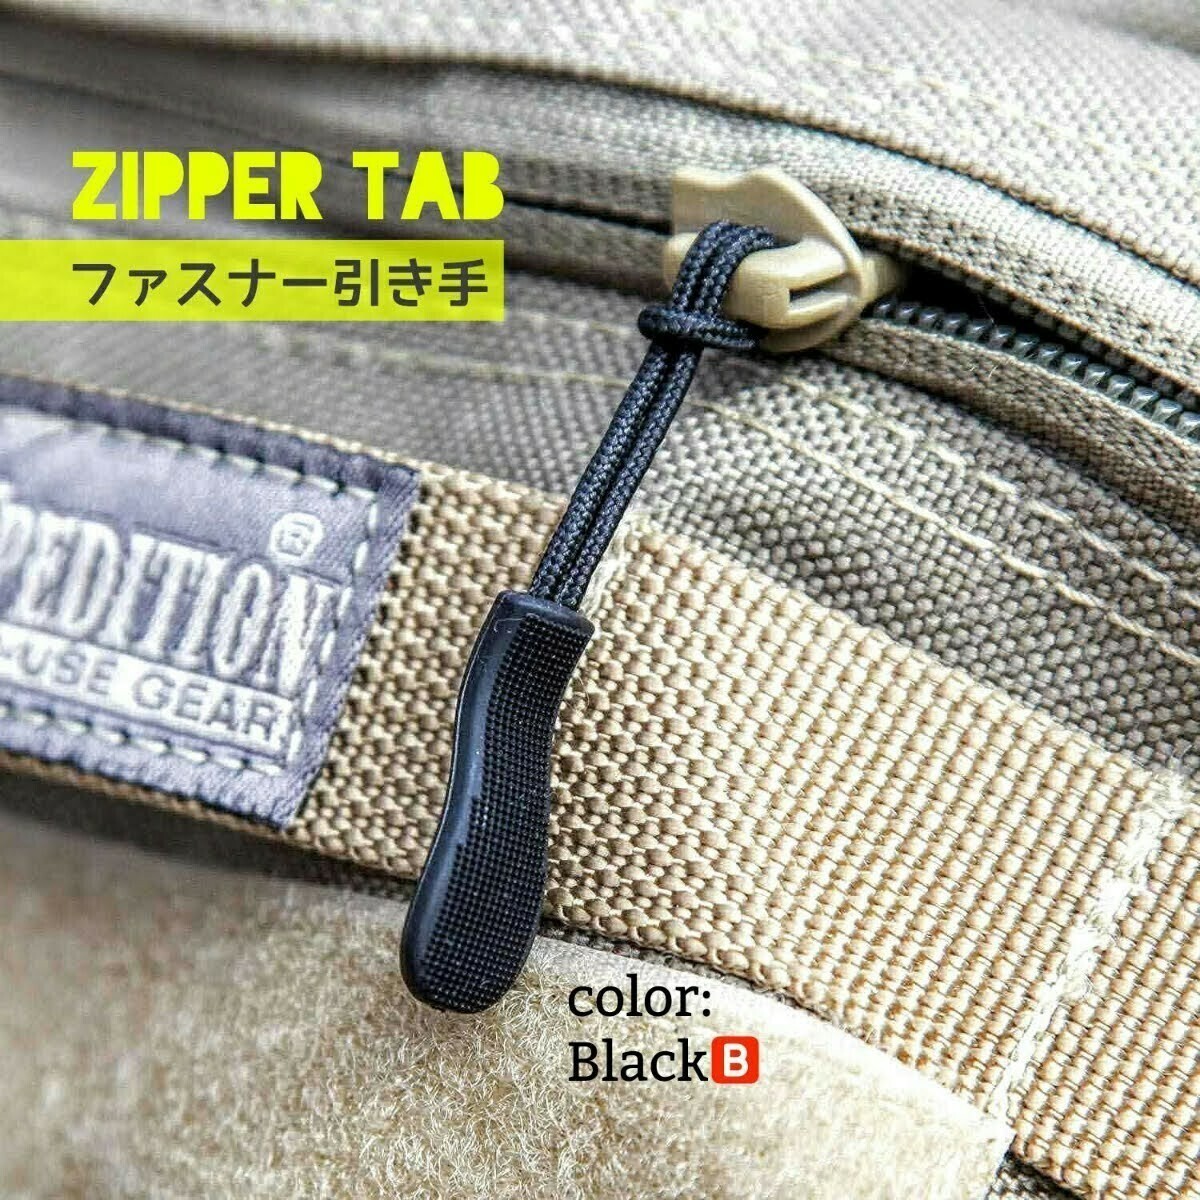 ZipperTab-B#売れ筋商品！ジッパータブ/ファスナー引き手●color：Black●10個+ボーナス!2個(計12個)セット：期間限定特価！送料込み399円_画像8